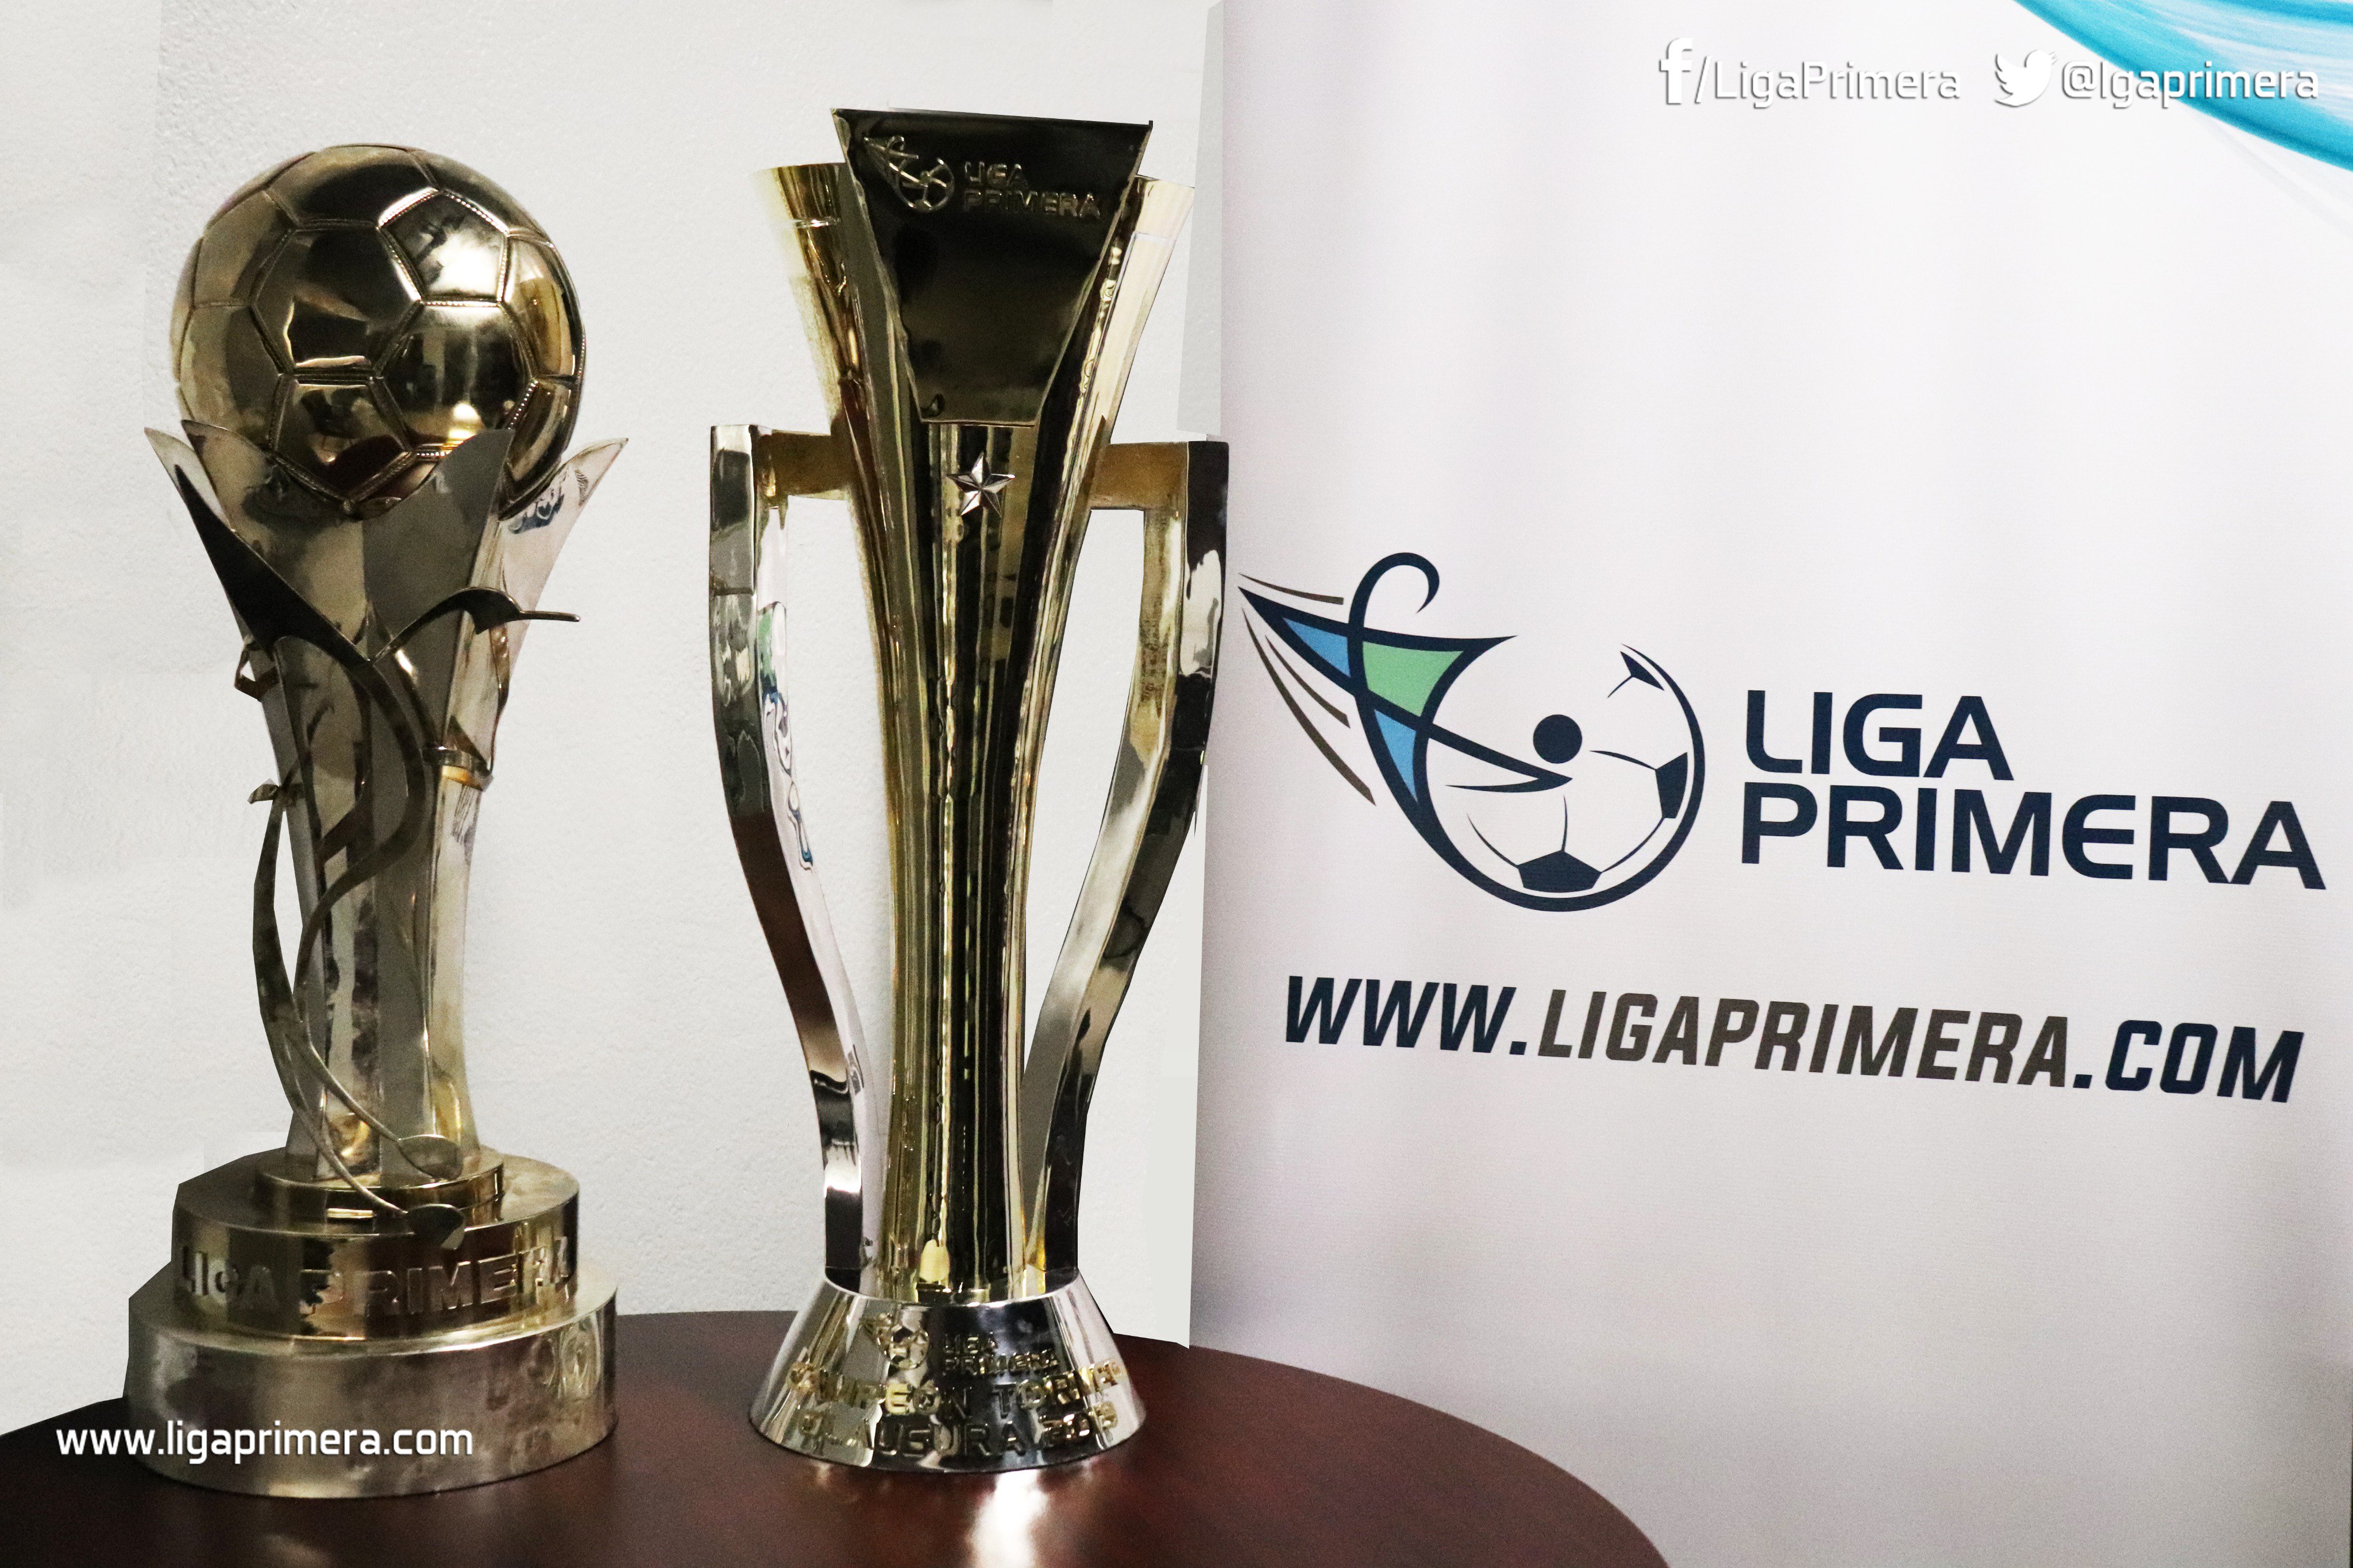 Liga Primera no Twitter: TROFEOS OFICIALES DE LIGA PRIMERA! El primer trofeo (izquierda) será entregado a los equipos campeones de Torneo Apertura; el segundo trofeo (derecha) será para equipos